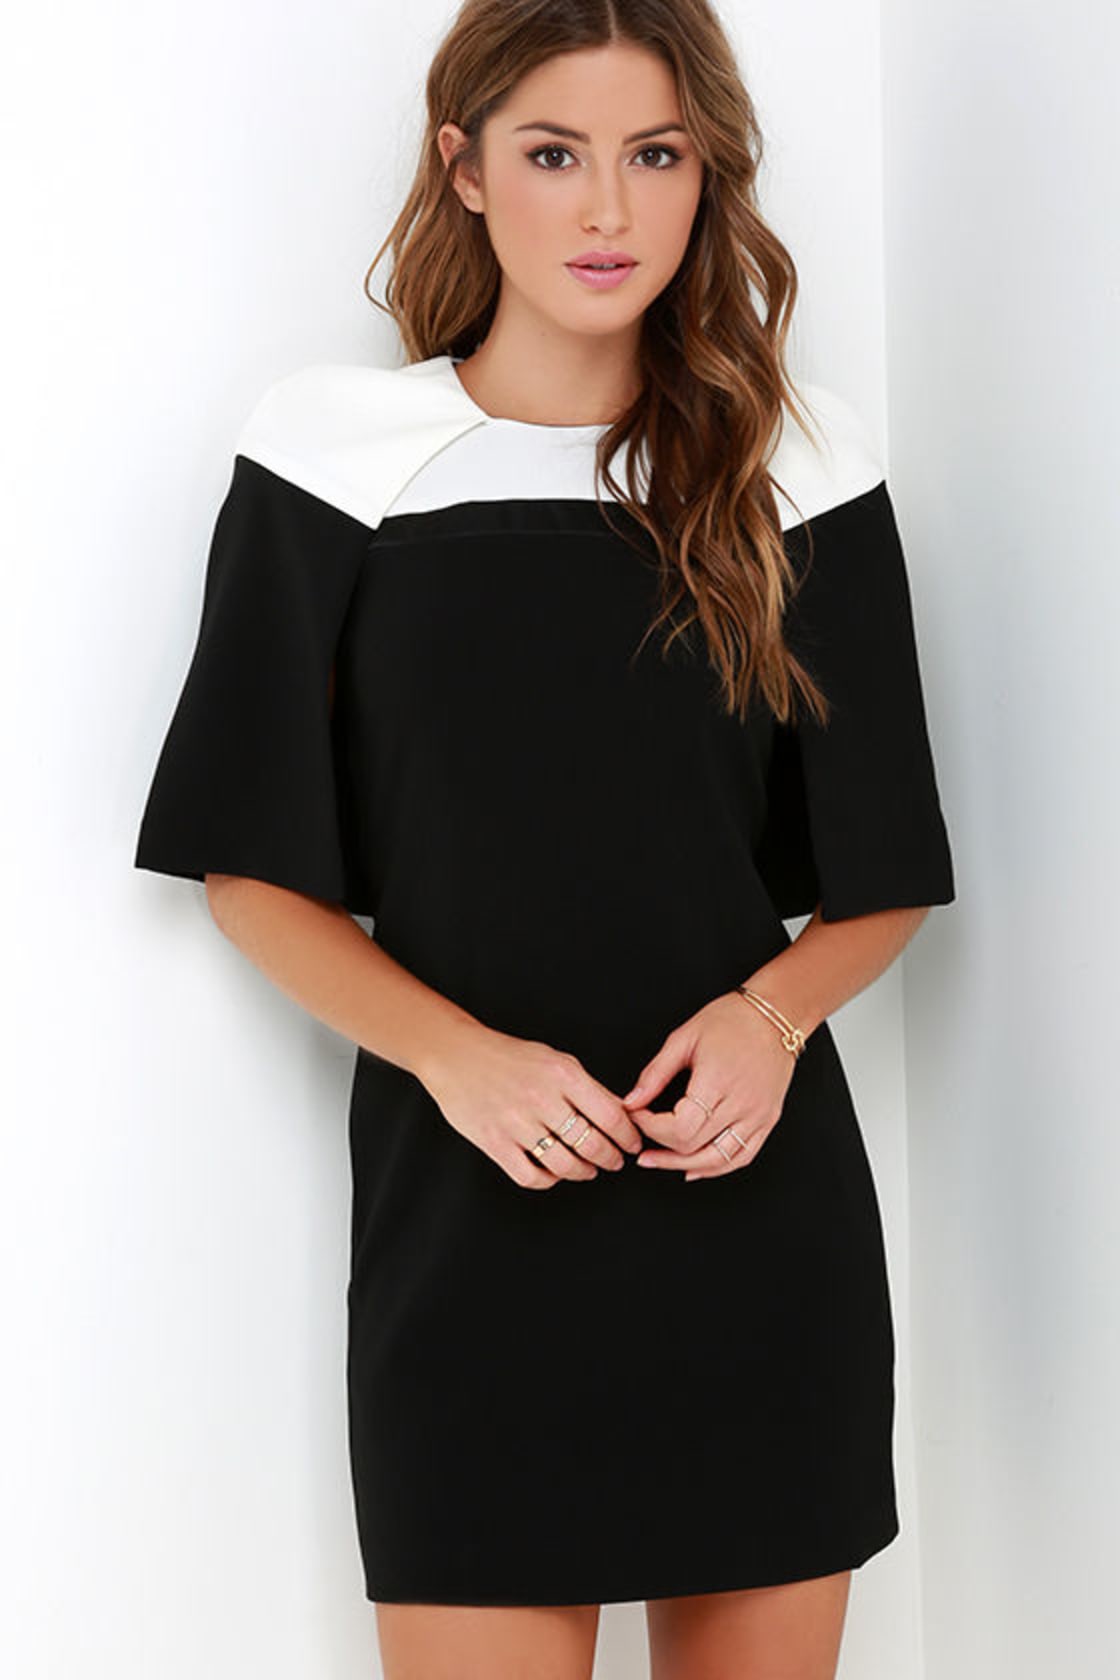 Elliatt Vatican Dress - Ivory and Black Dress - Cape Dress - Color ...